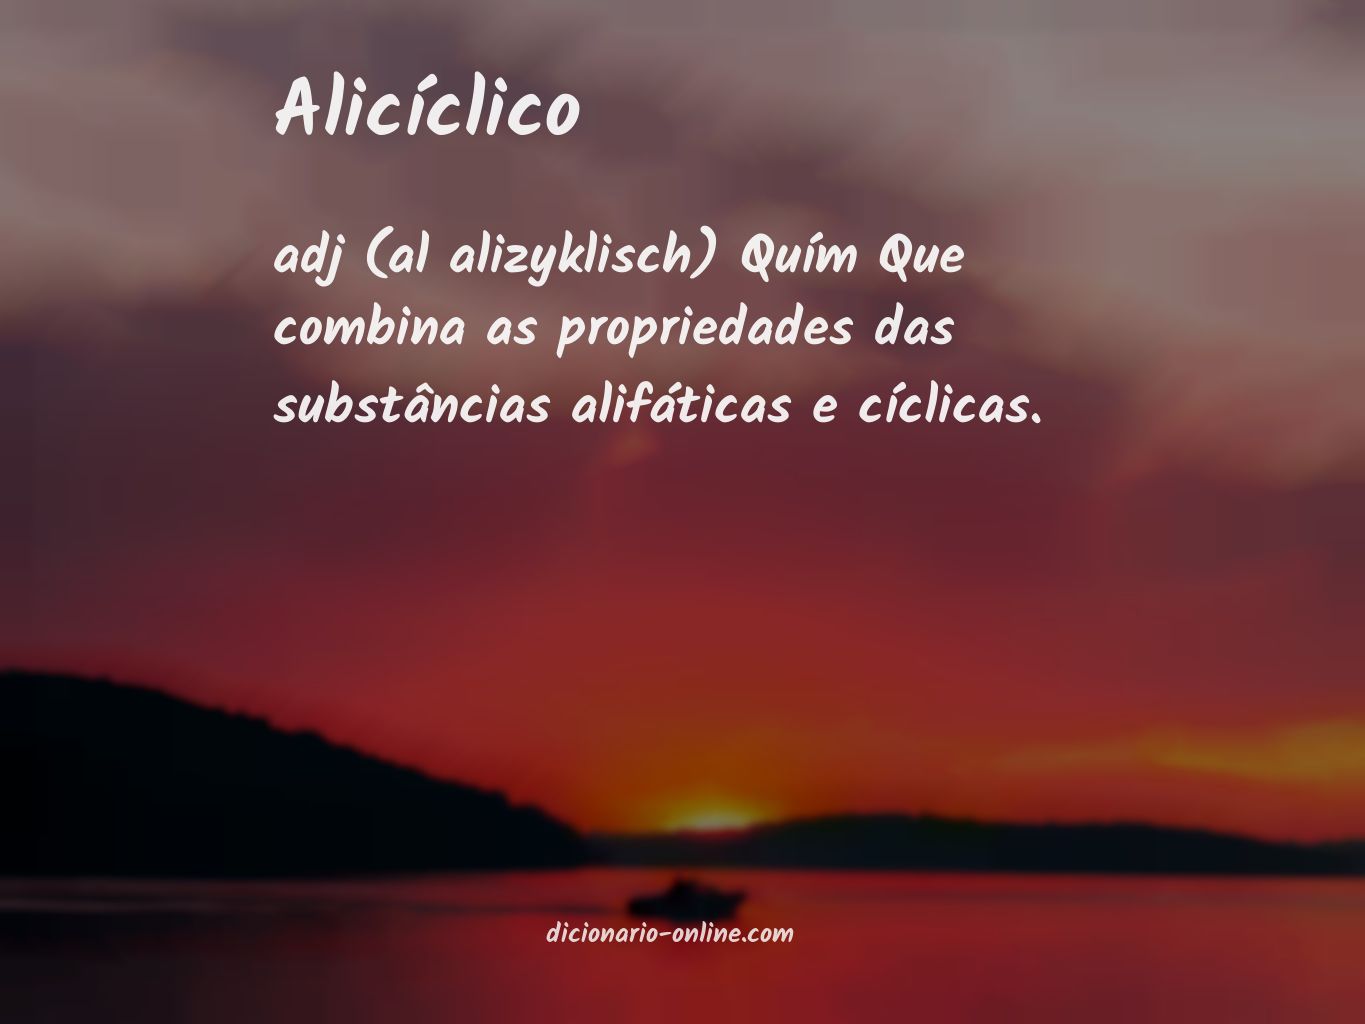 Significado de alicíclico